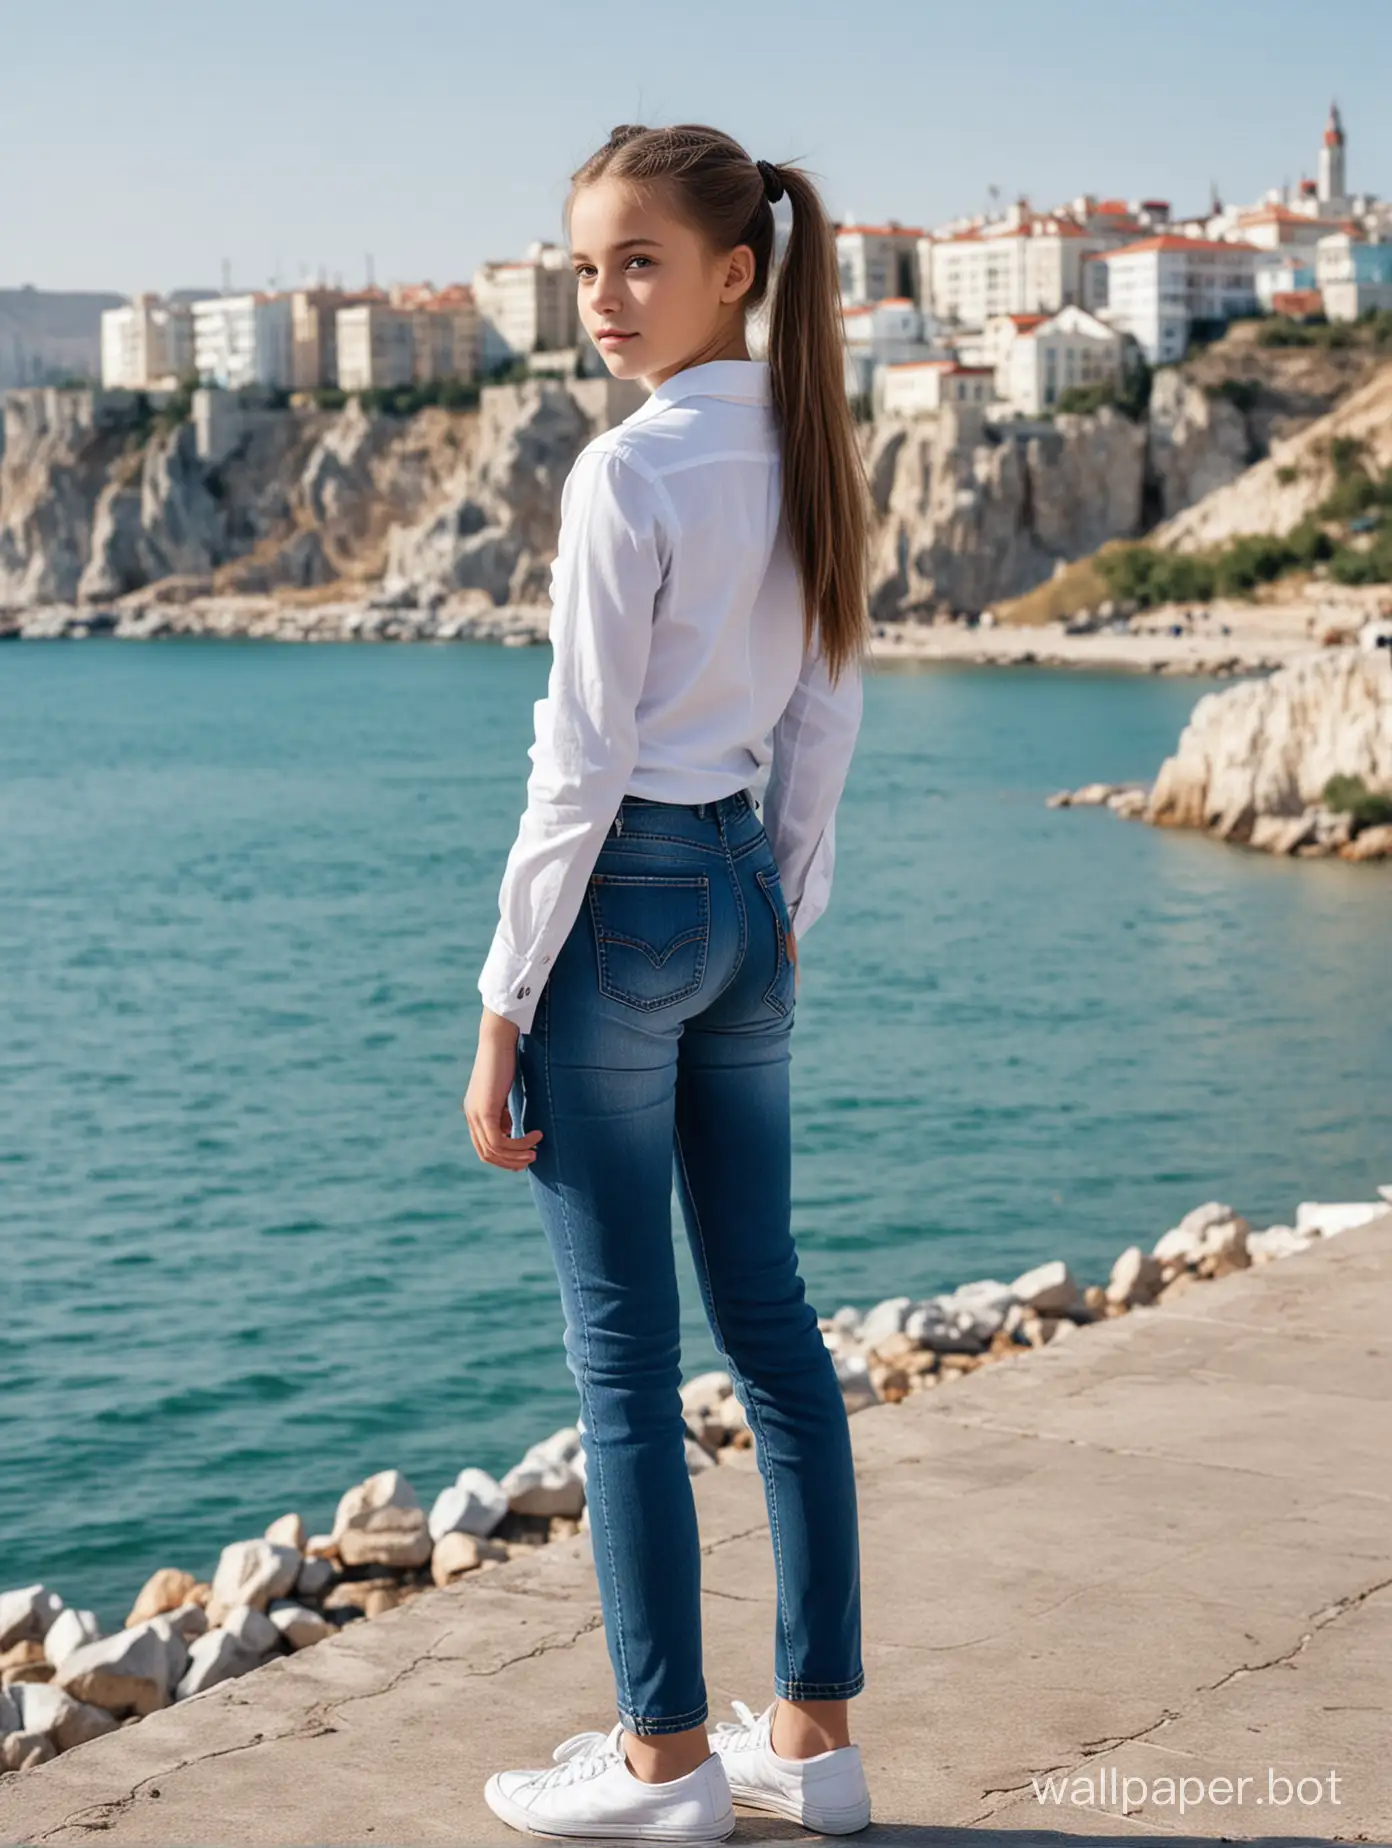 Красивая советская школьница 10 лет с хвостиками в Крыму на фоне моря, в полный рост, динамичные позы, люди и строения на заднем плане, обтягивающие джинсы, попка, вид сзади